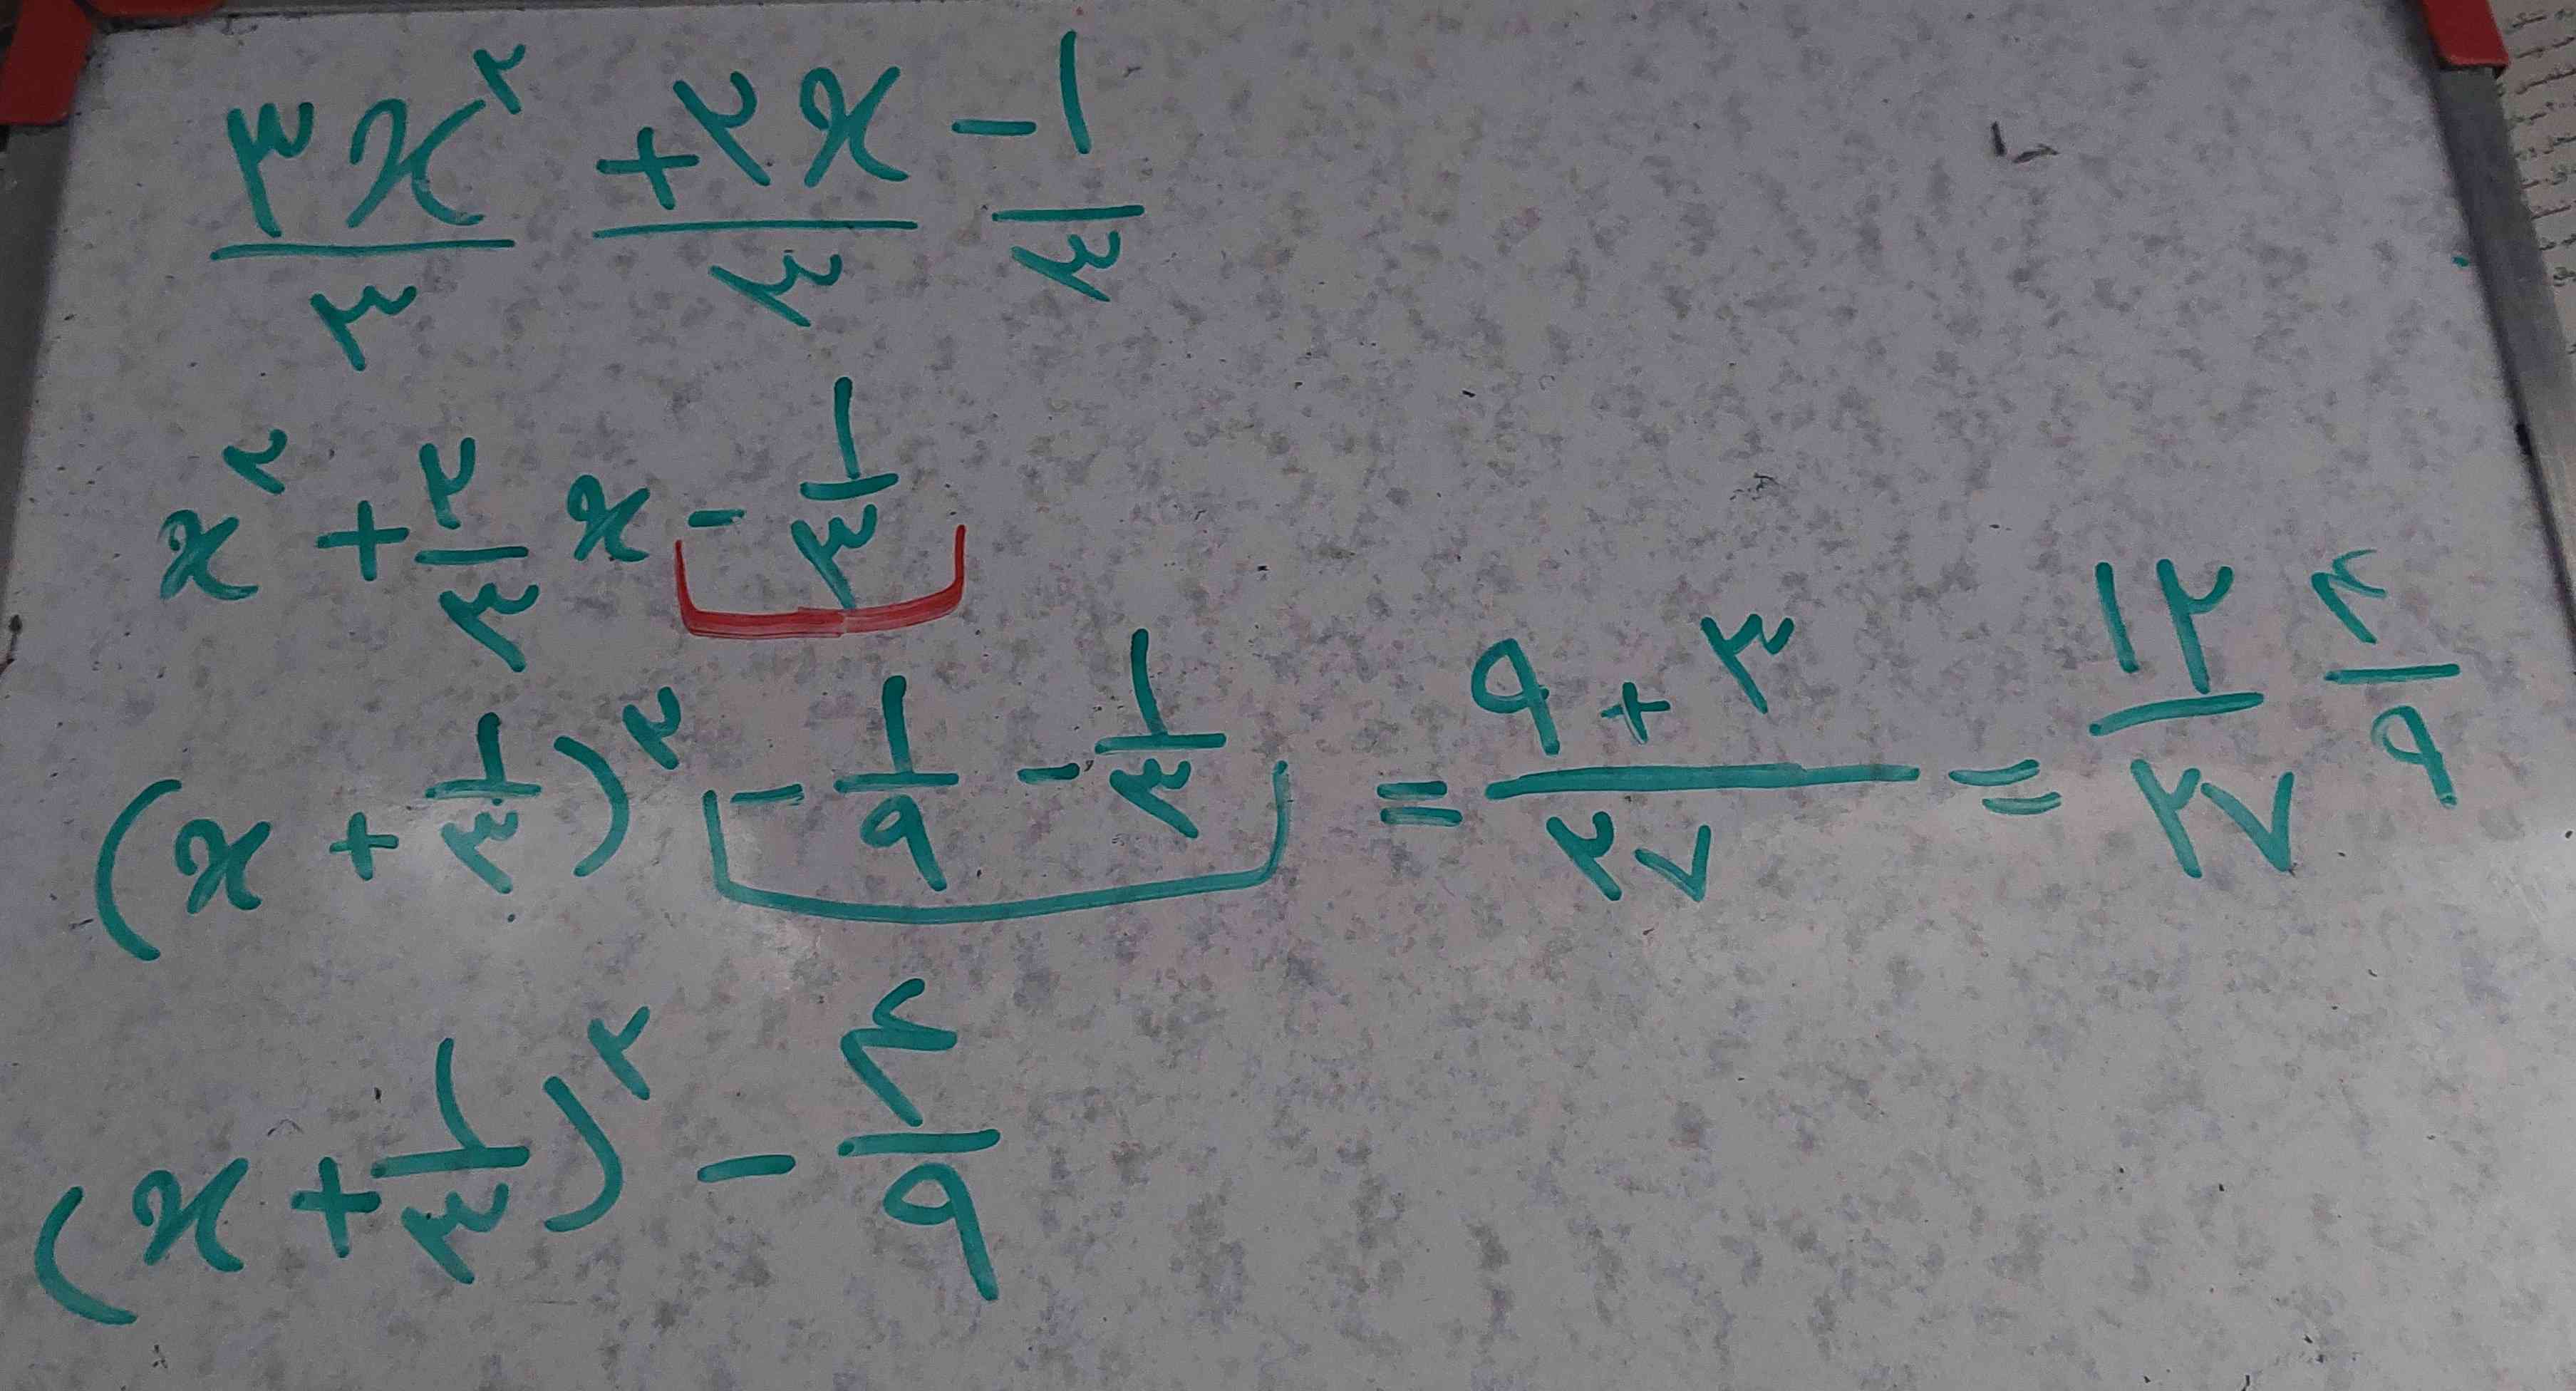 بچه ها من حل معادله با مربع کامل رو از این روش میرم فقط یه سوال آخرشو نباید ببرم زبر رادیکال؟